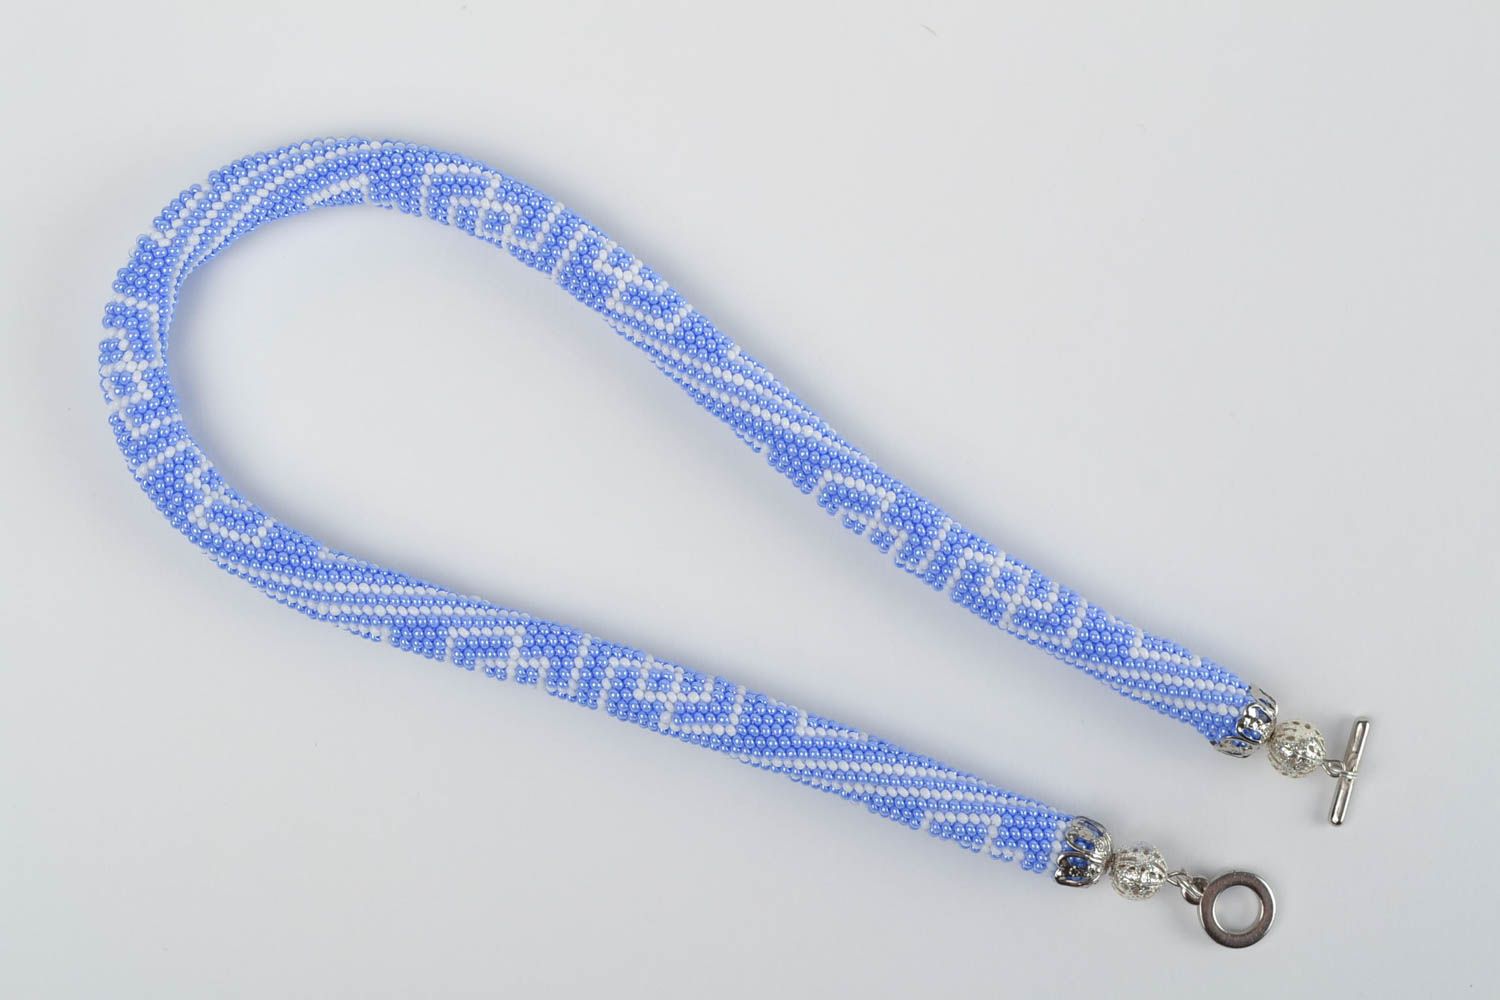 Жгут из бисера плетеный голубой с белыми узорами красивый стильный ручная работа фото 3